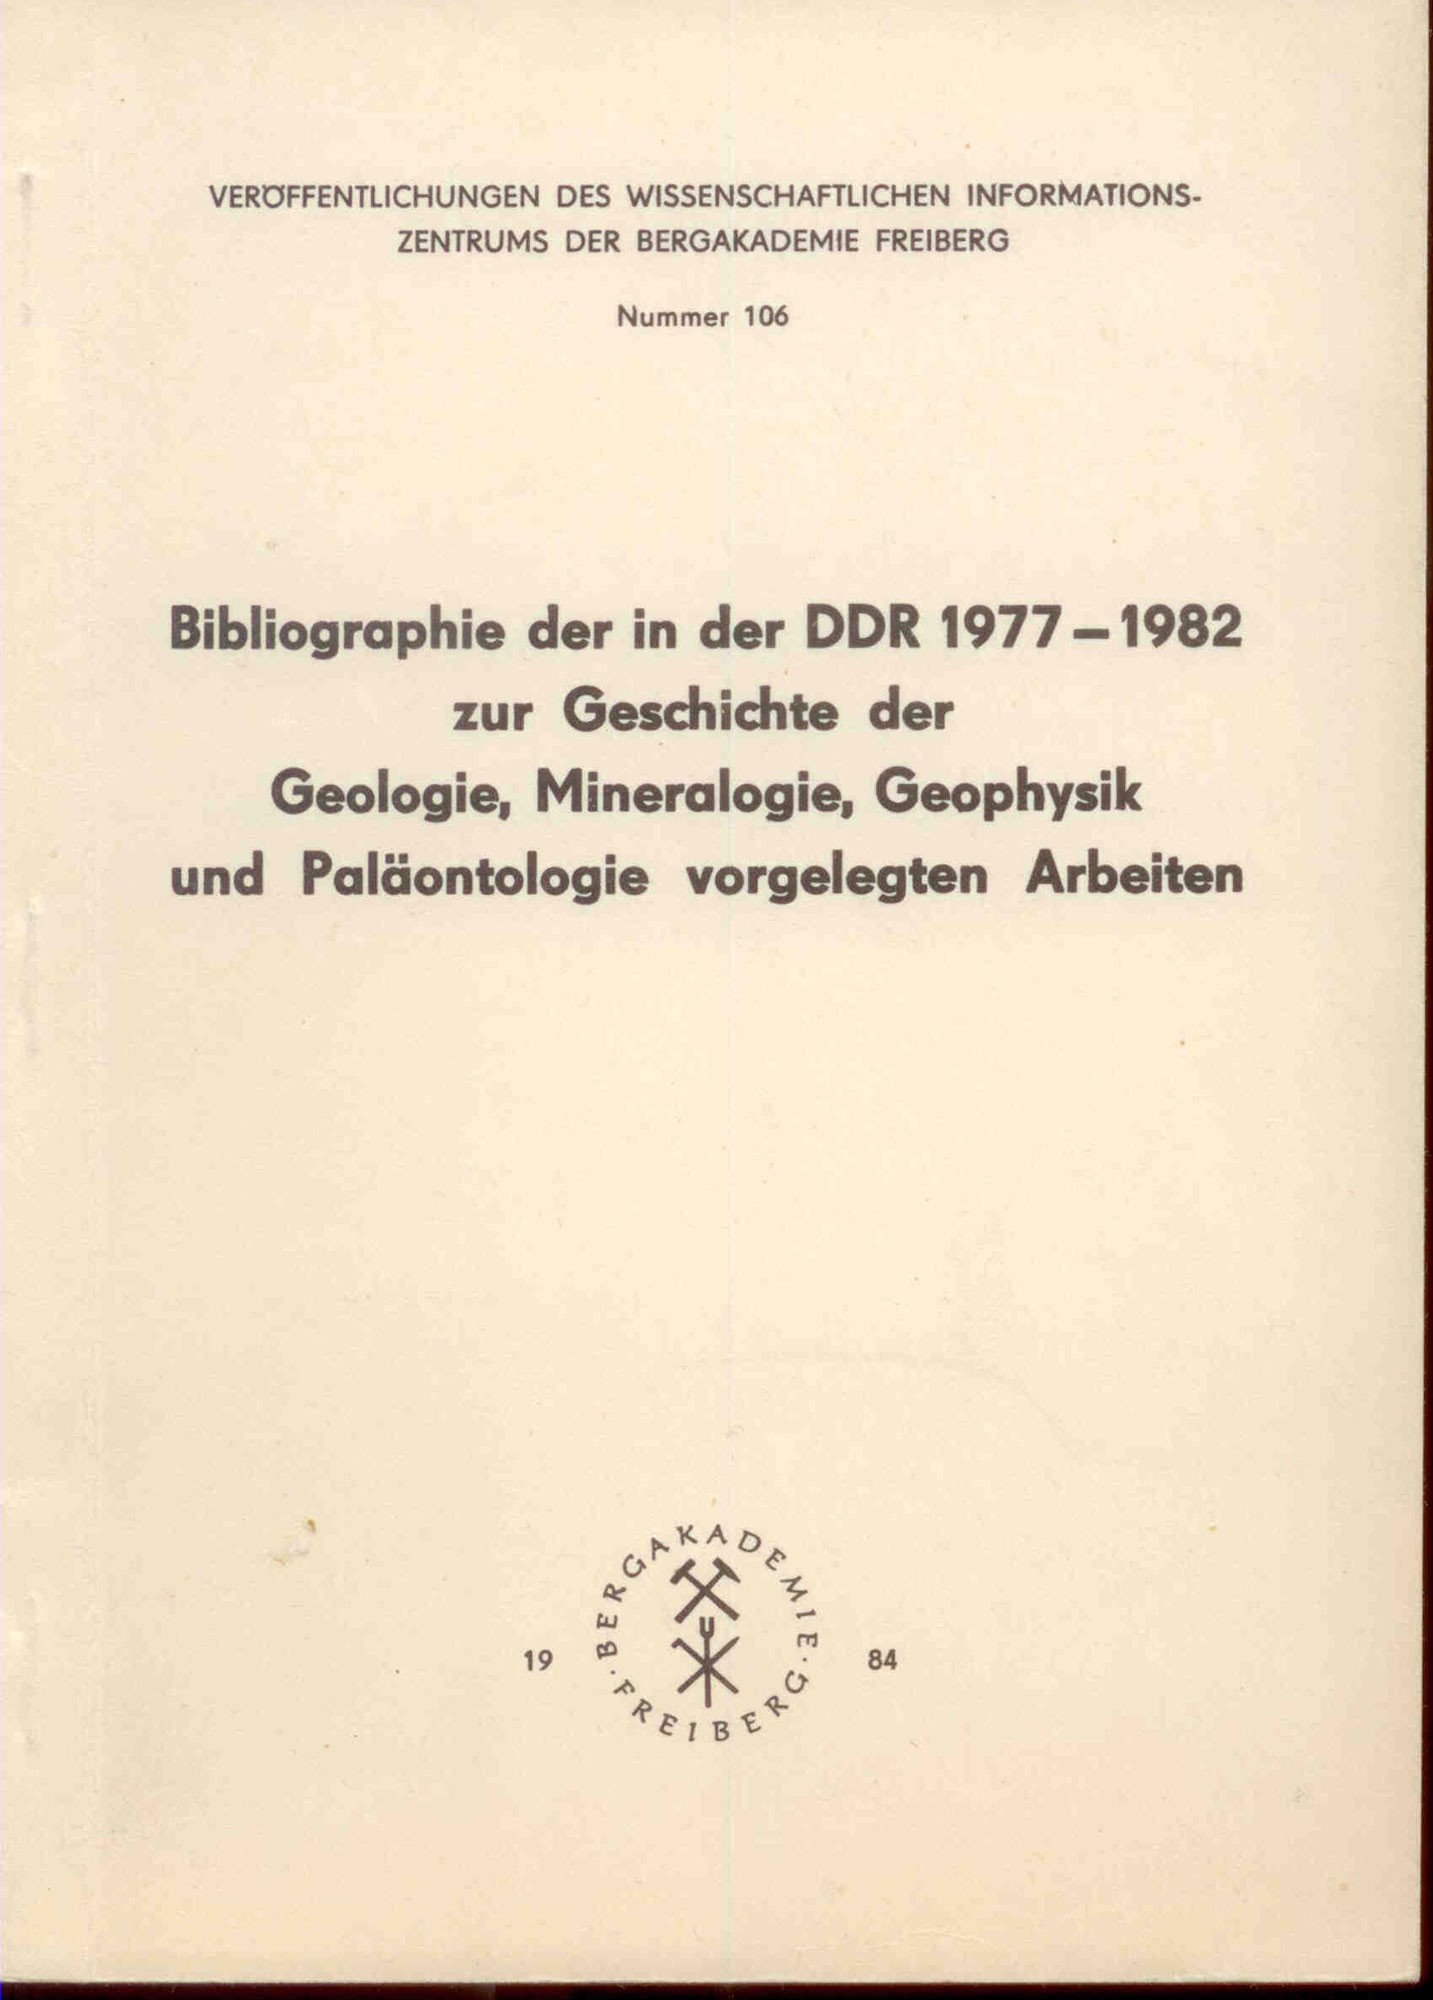 Schmidt, P.: Bibliographie der in der DDR 1977-1982 zur Geschichte der Geologie, Mineralogie, Geophysik und Paläontologie vorgelegten Arbeiten